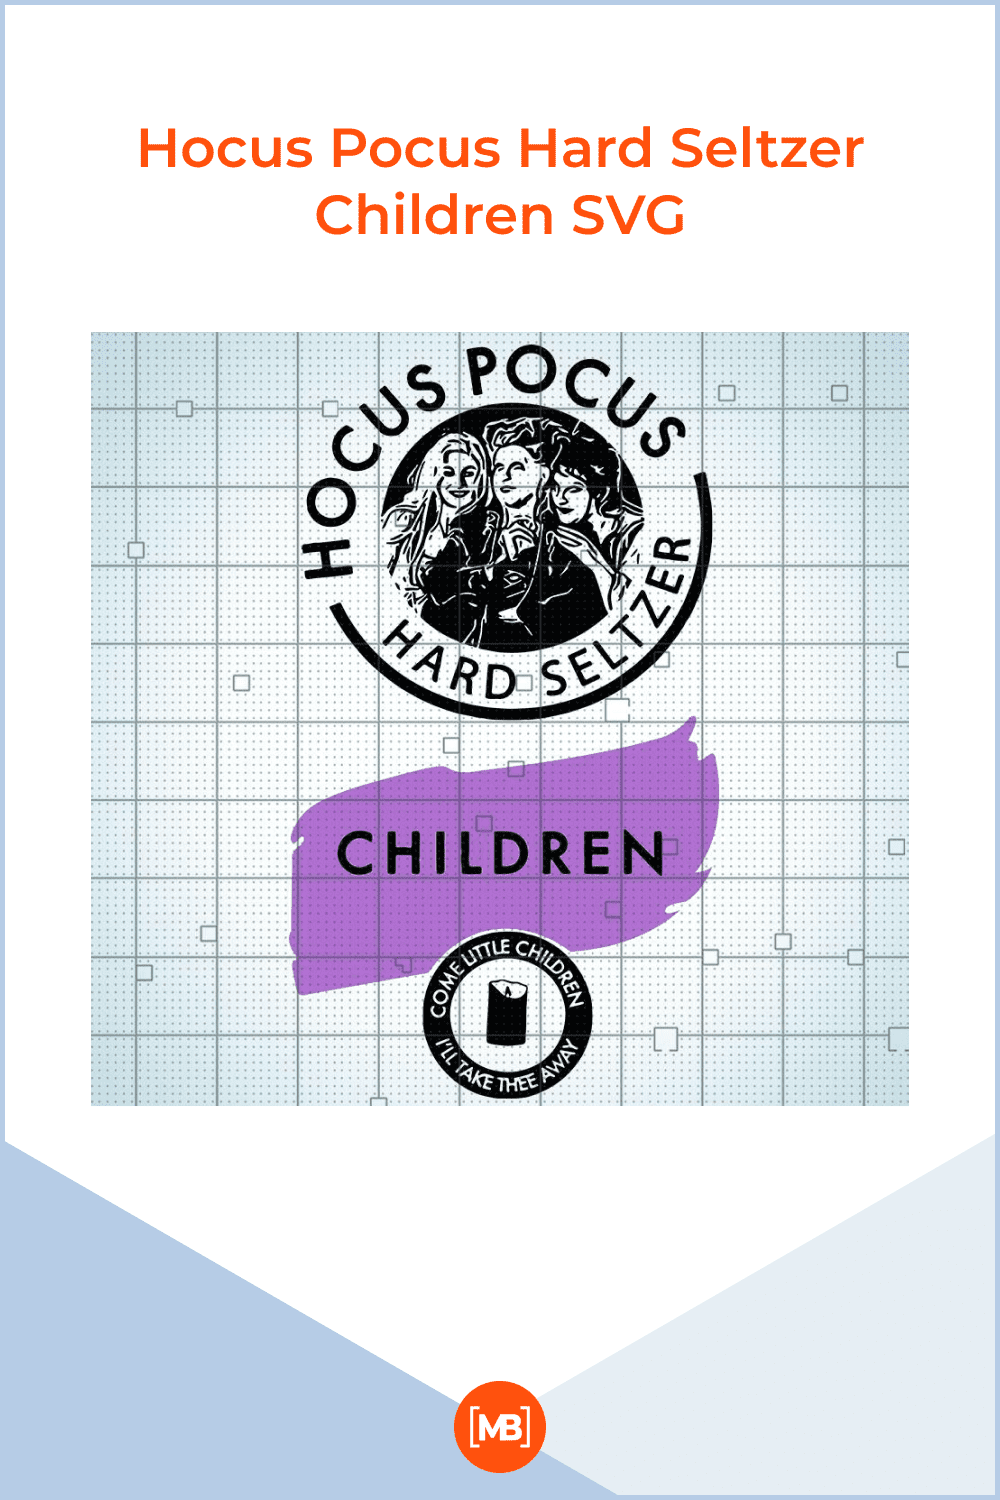 Hocus Pocus Hard Seltzer Children SVG.